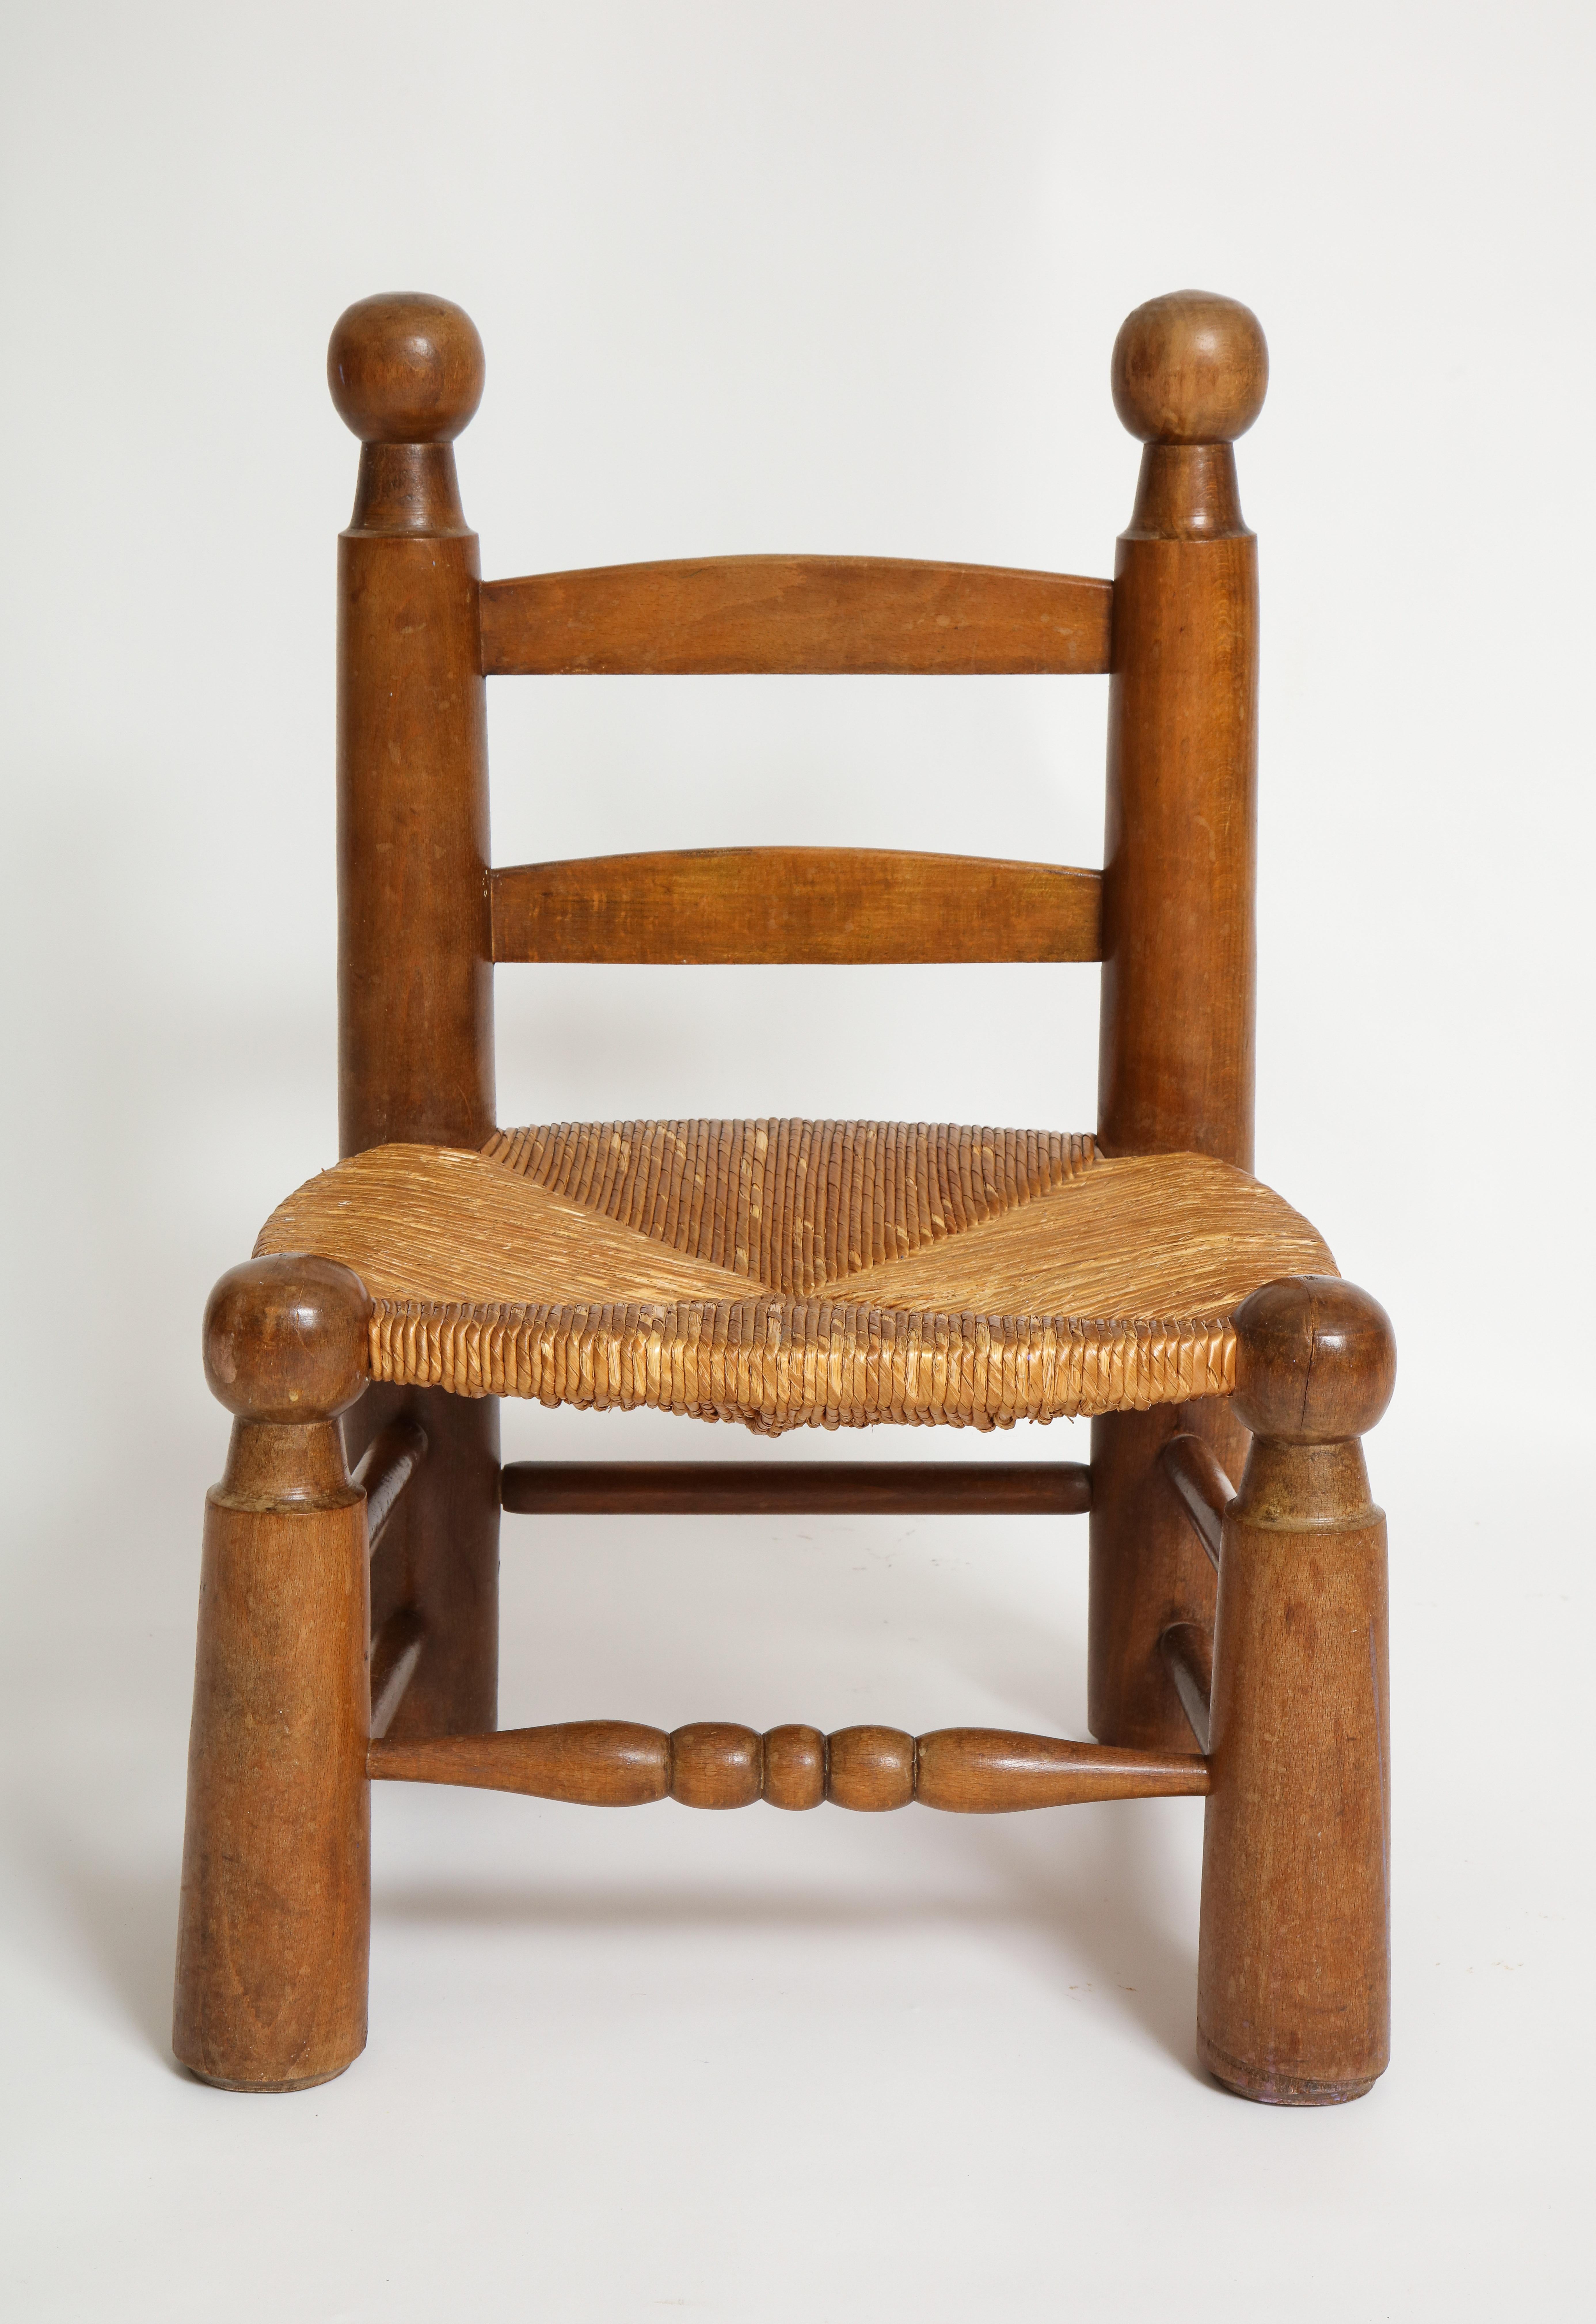 Einzelner Kinderstuhl aus gedrechseltem Holz und Binsen im Stil von Charlotte Perriand.

Schöner Kinderstuhl. Schwer und solide in schönem Vintage-Zustand.